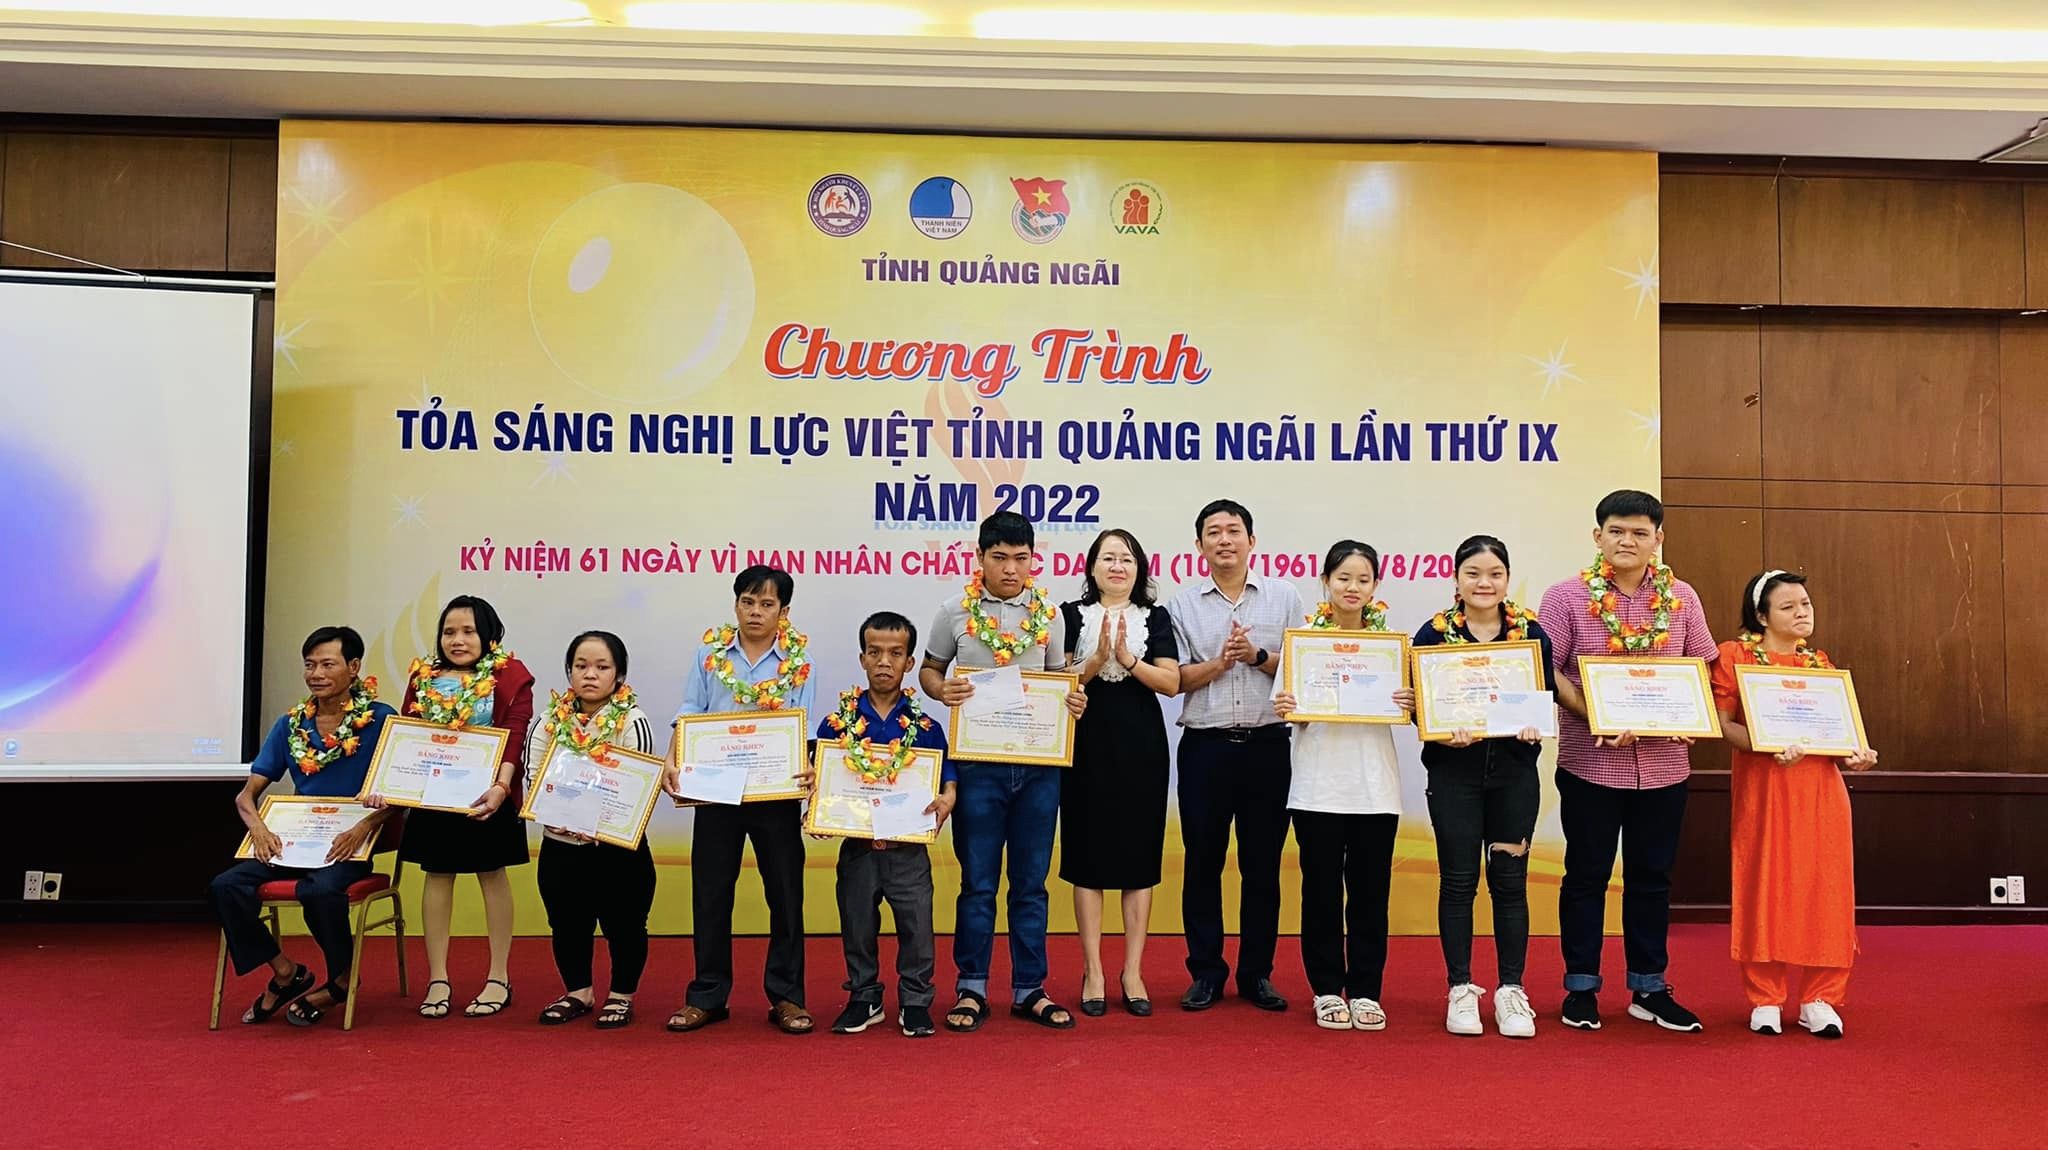 Phan Quang Thái - tấm gương khuyết tật tiêu biểu được tuyên dương tại Chương trình Tỏa sáng nghị lực Việt tỉnh Quảng Ngãi